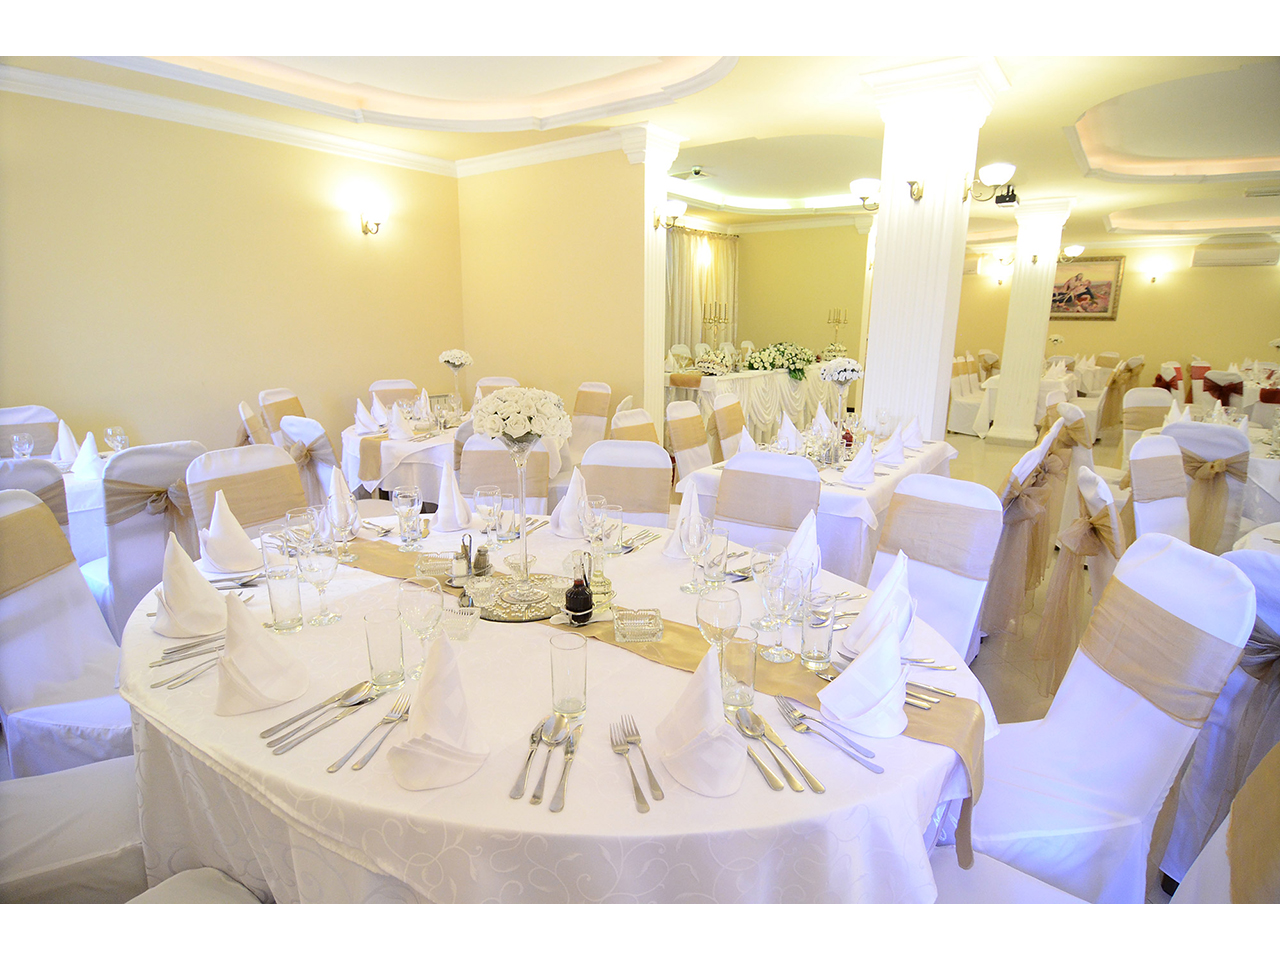 Photo 4 - GRAND HERTZ - RESTAURANT FOR WEDDINGS AND CELEBRATIONS Restaurants for weddings, celebrations Belgrade